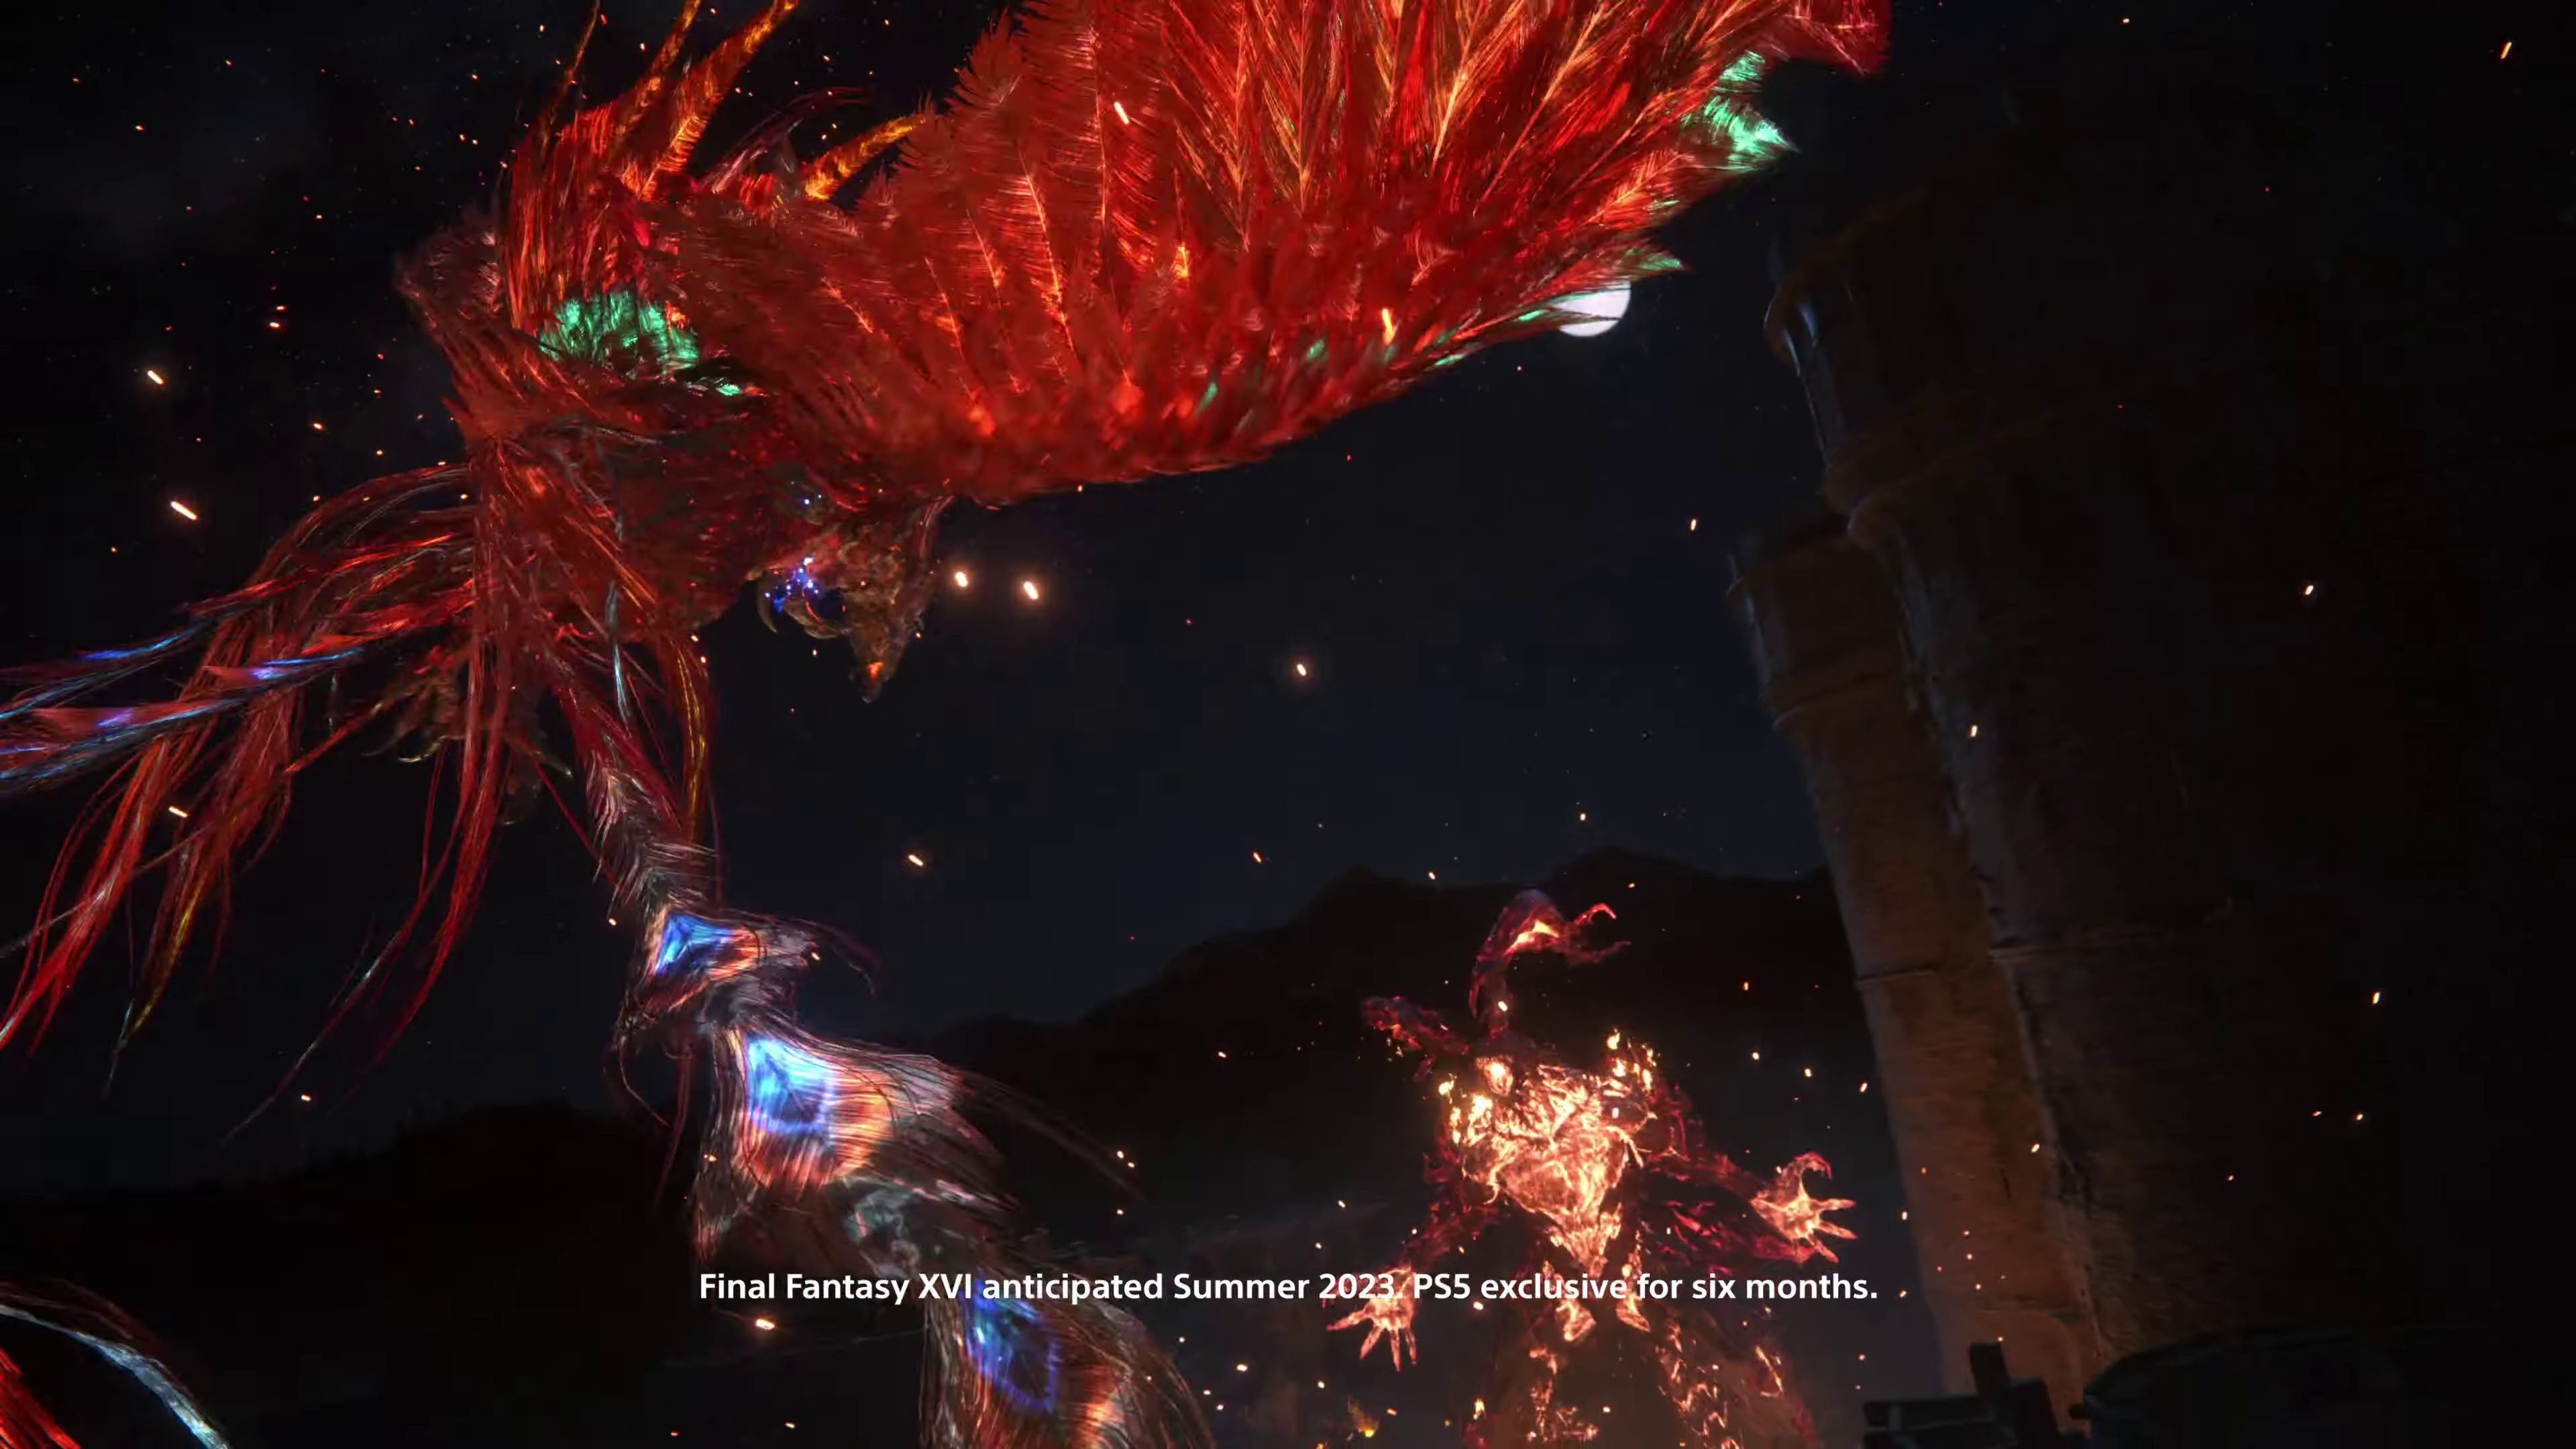 Imagen para La exclusividad de Final Fantasy XVI en PlayStation 5 durará seis meses